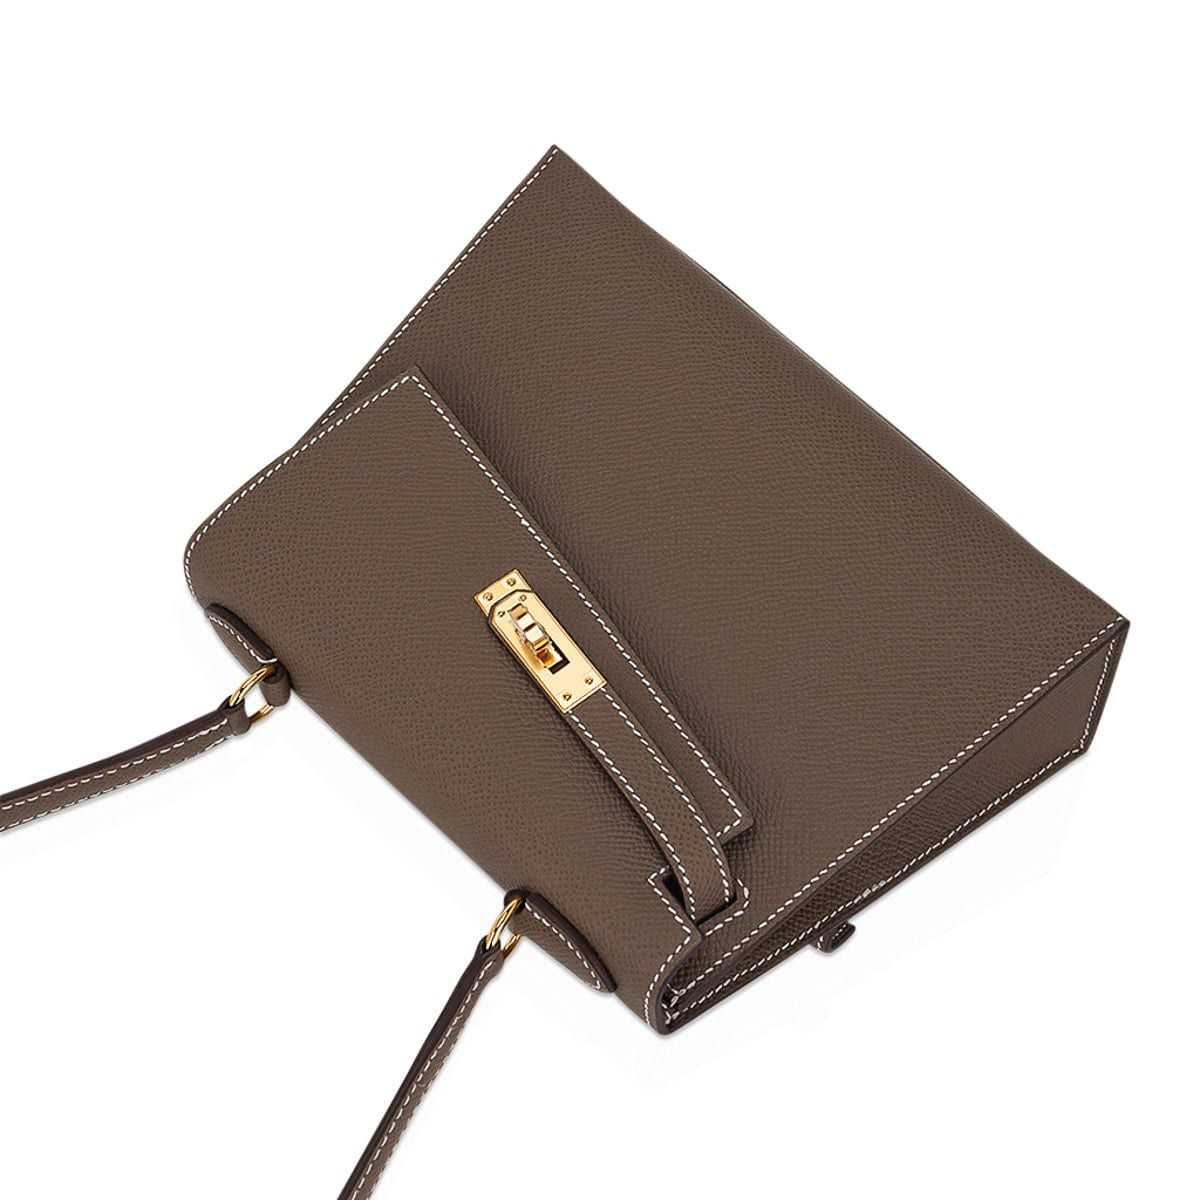 Hermès Limited Edition Mini Kelly 20 Sellier en Desordre Bag Etoupe Epsom Gold